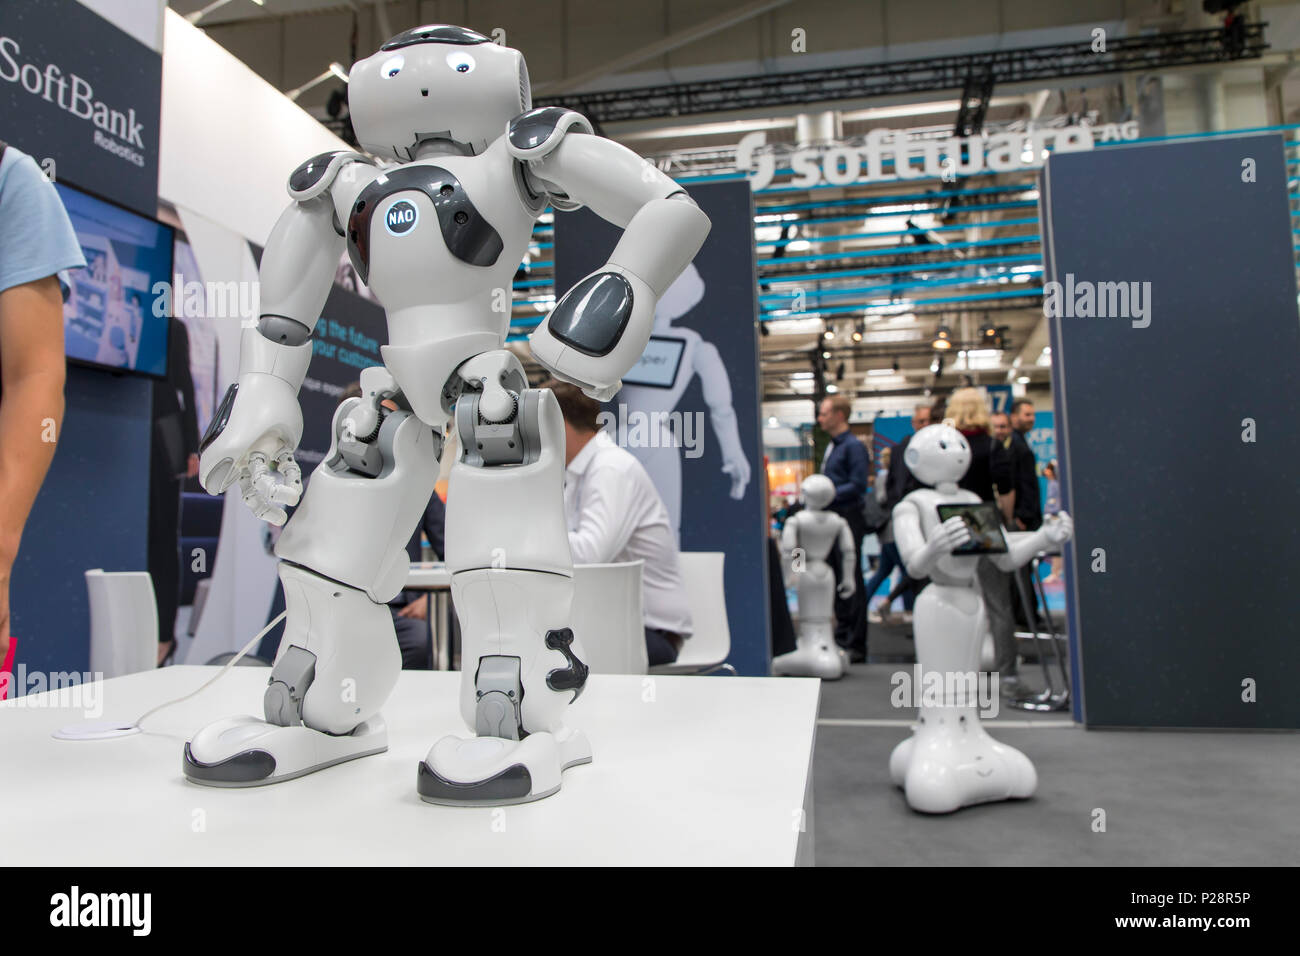 Softbank robotics nao robot hi-res stock photography images - Alamy